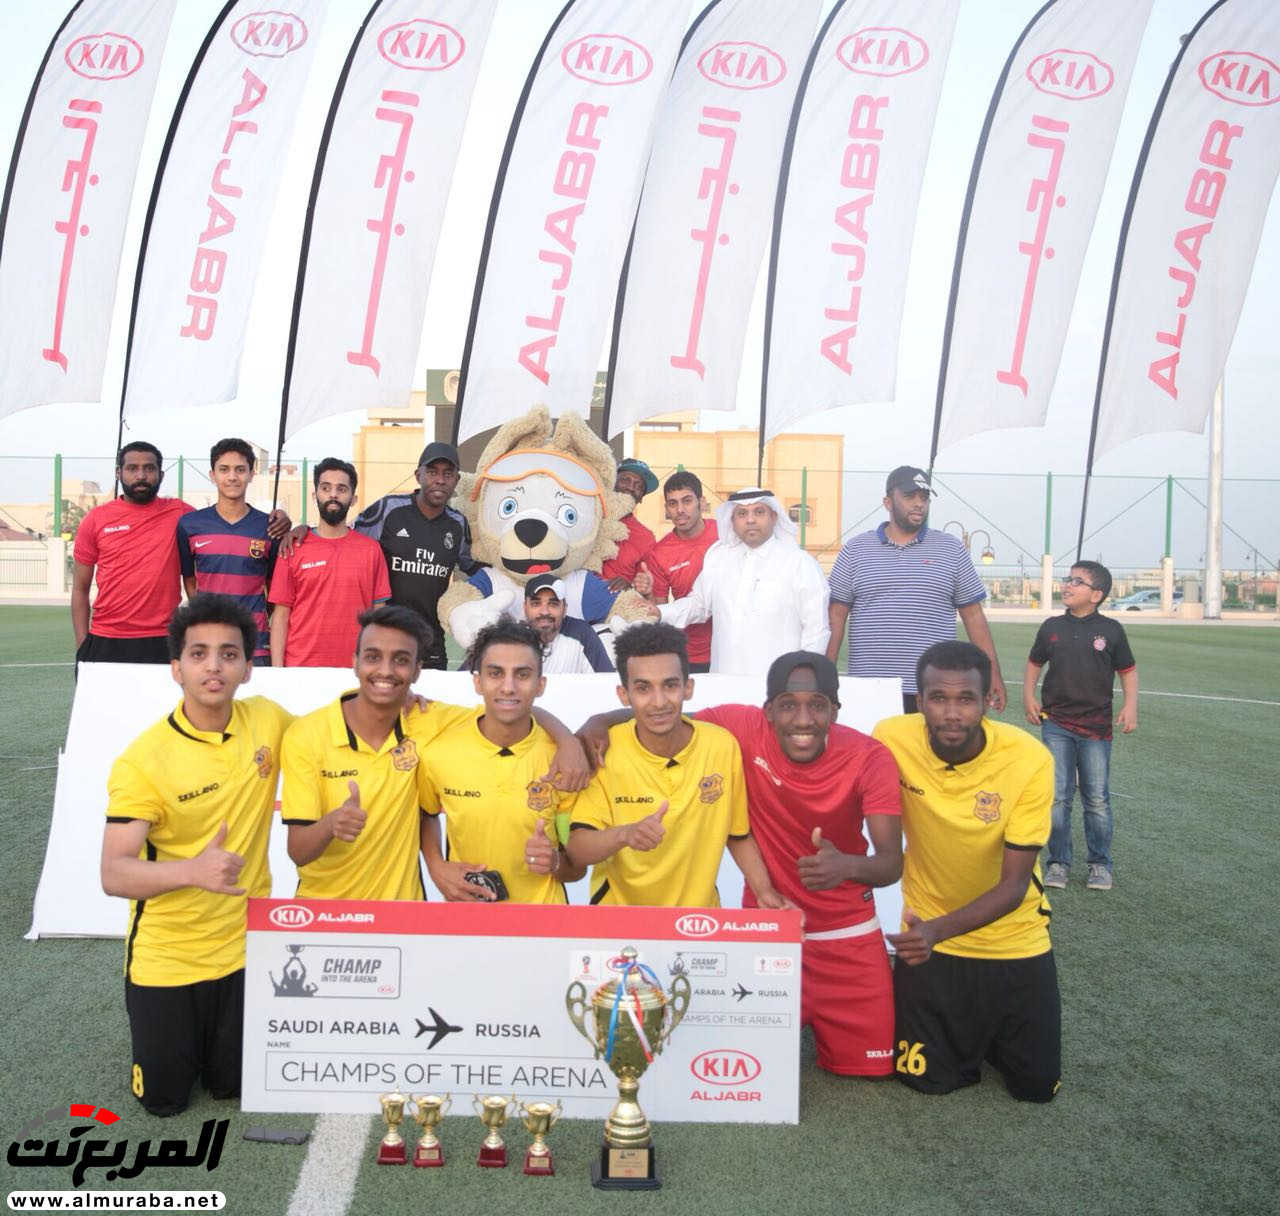 بطولة كيا الجبر لخماسيات كرة القدم تنطلق مجددا في نسختها العاشرة بالمملكة 4